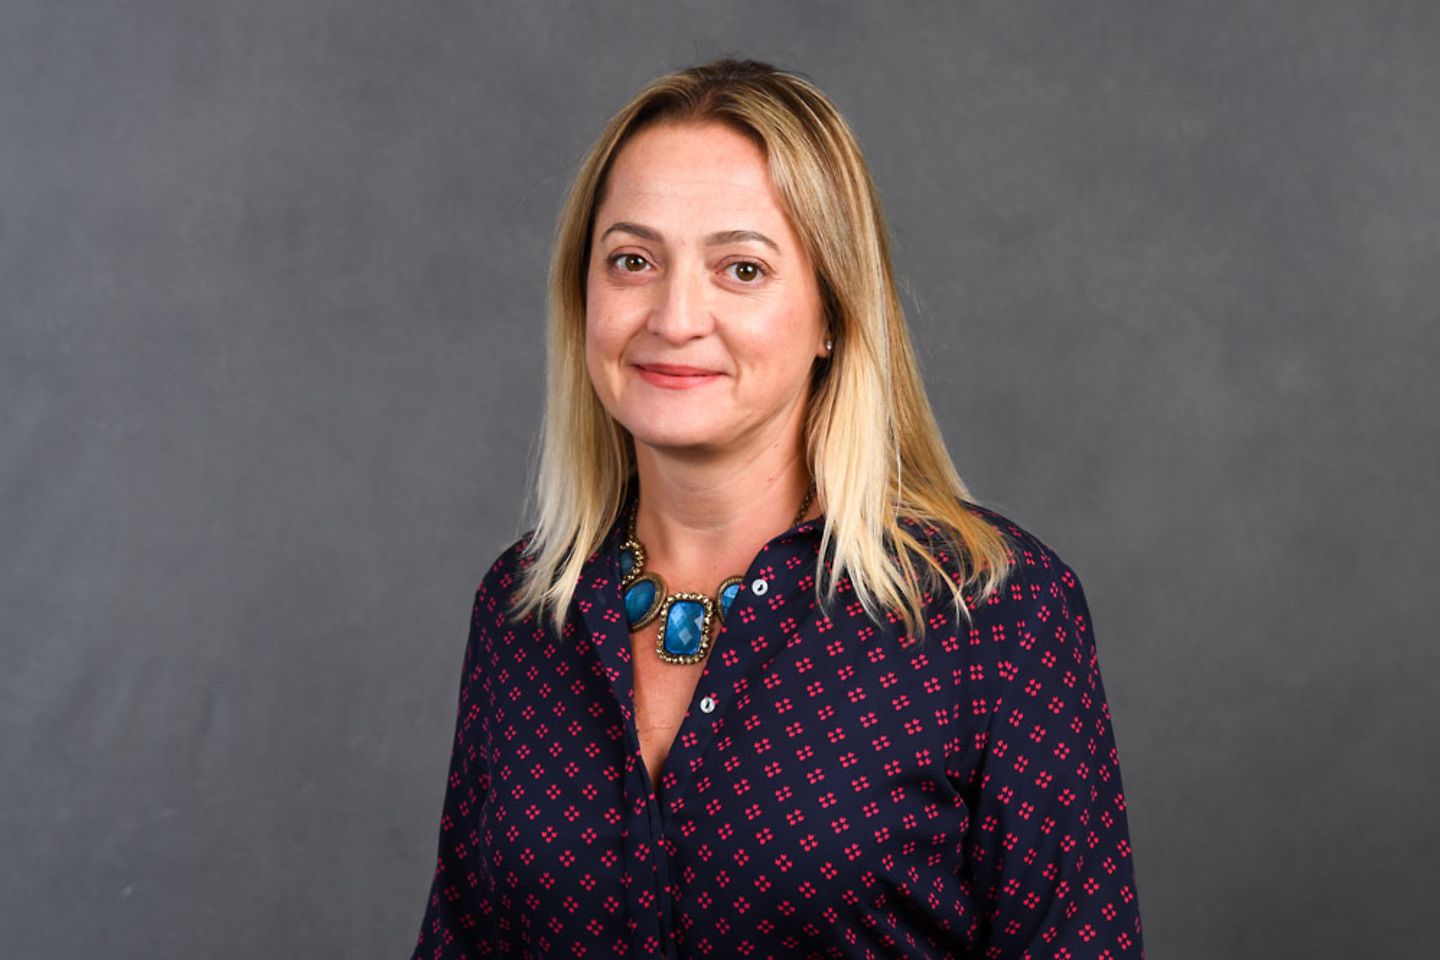 Angélica Vitali – Managing Director